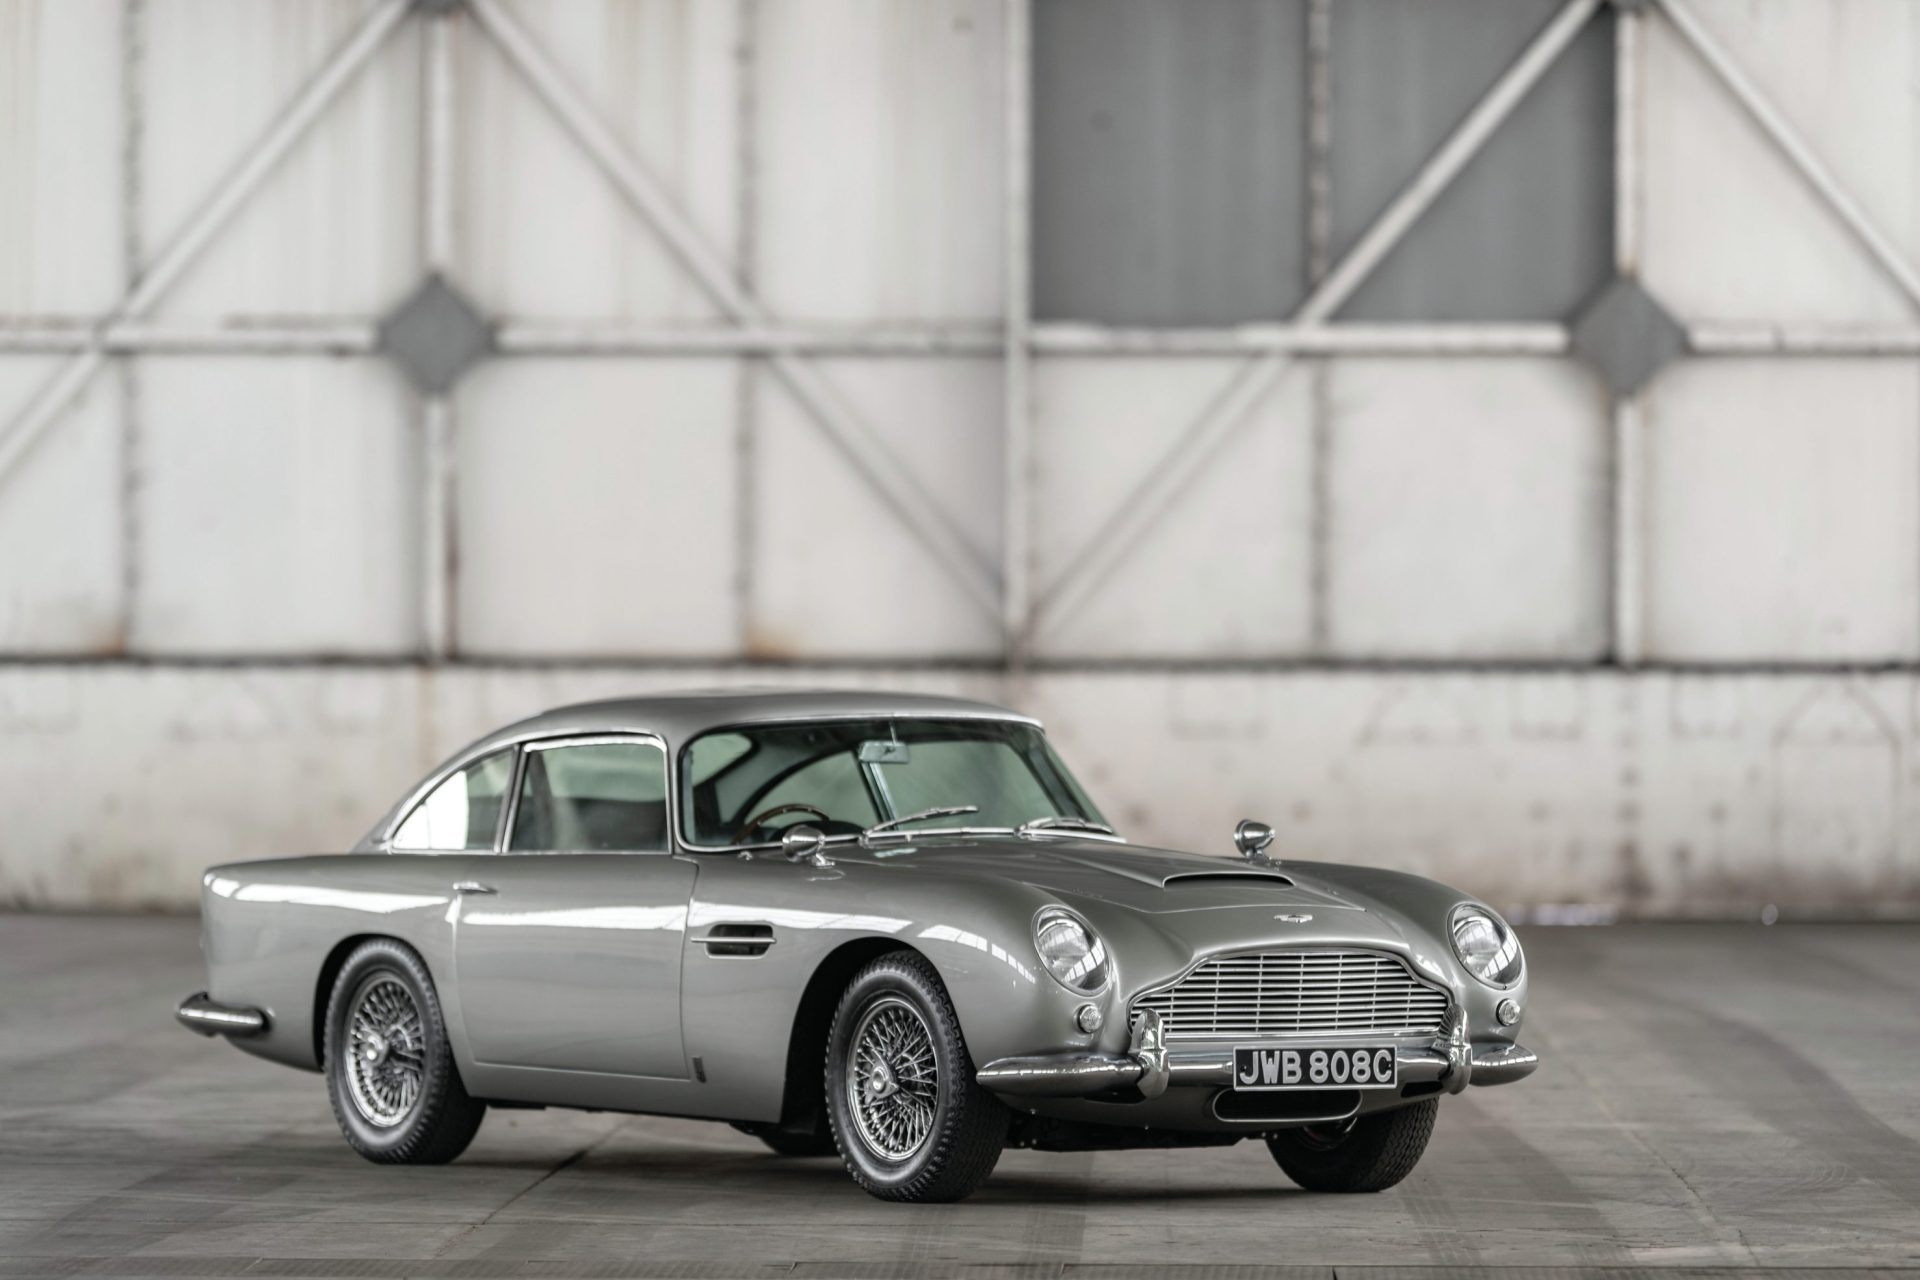 Aston Martin DB5: Aristocracia britânica